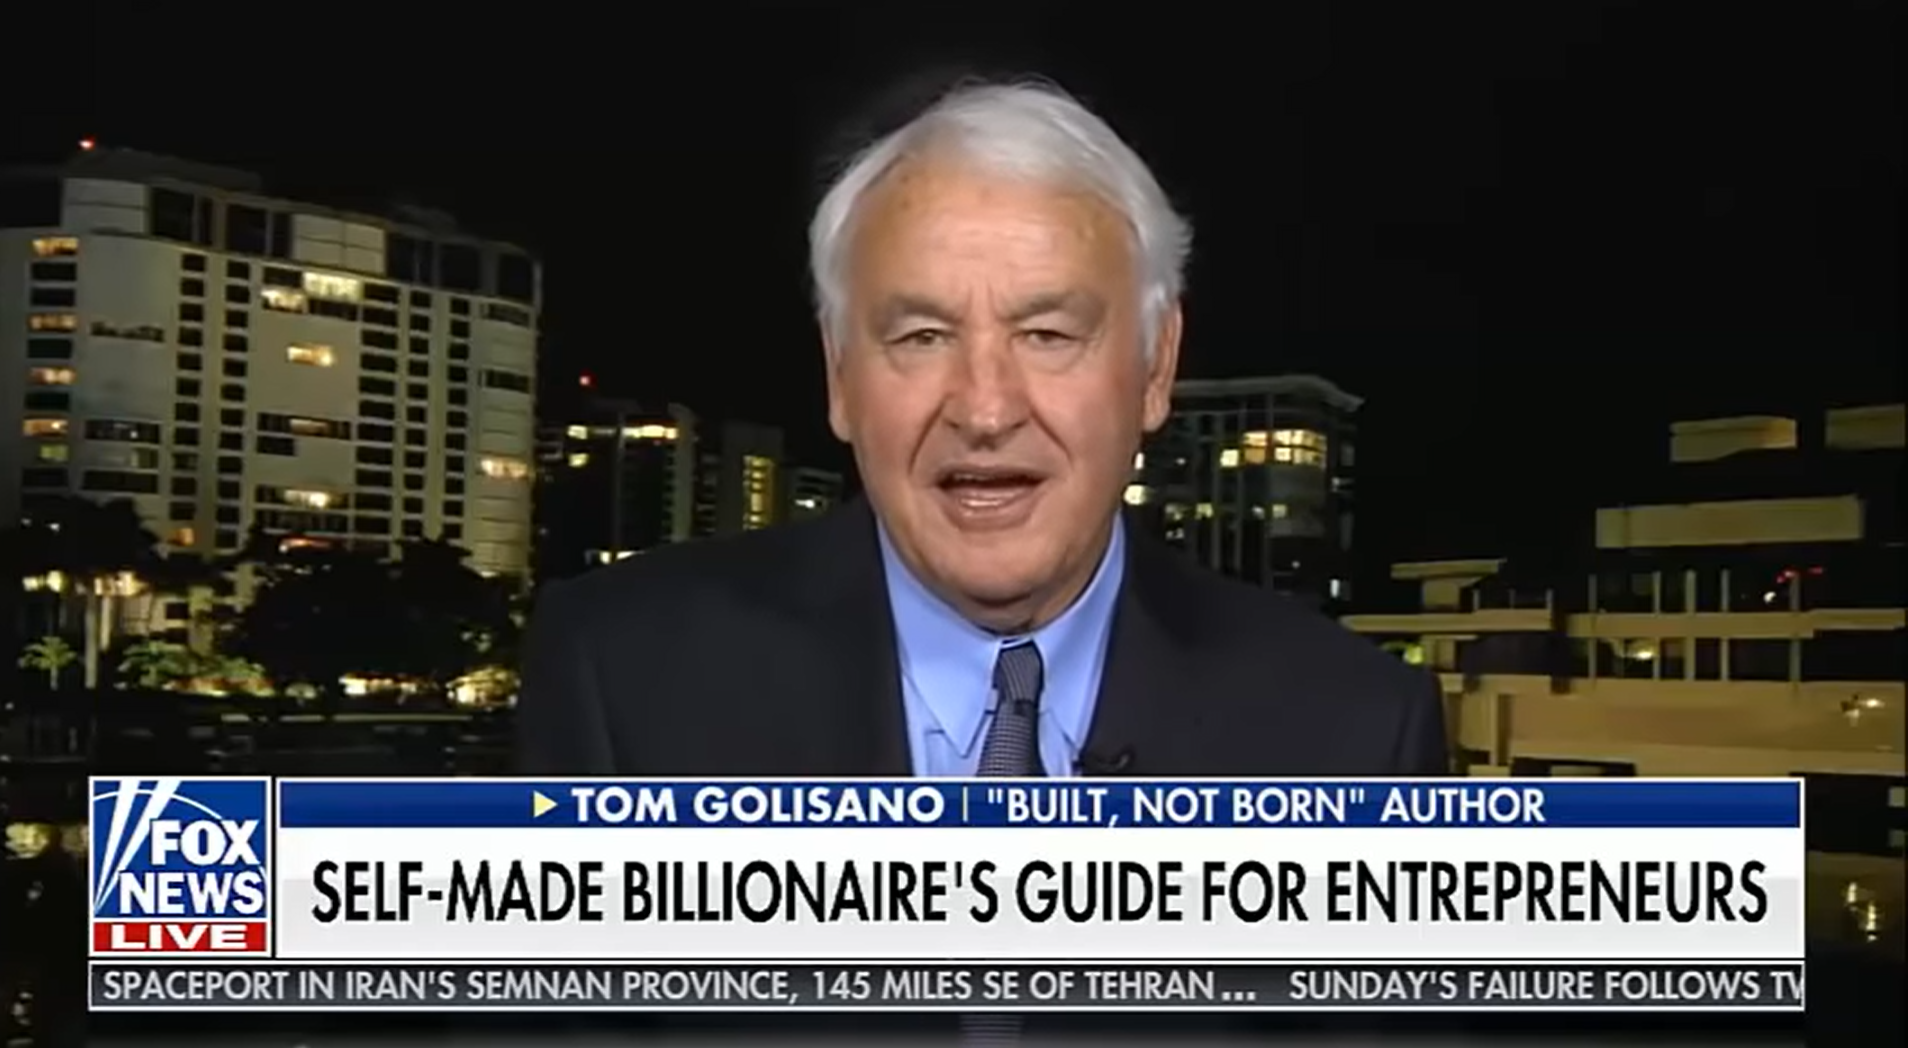 Tom Golisano interviewed on Fox news self-made billionaire's guide for entrepreneurs 